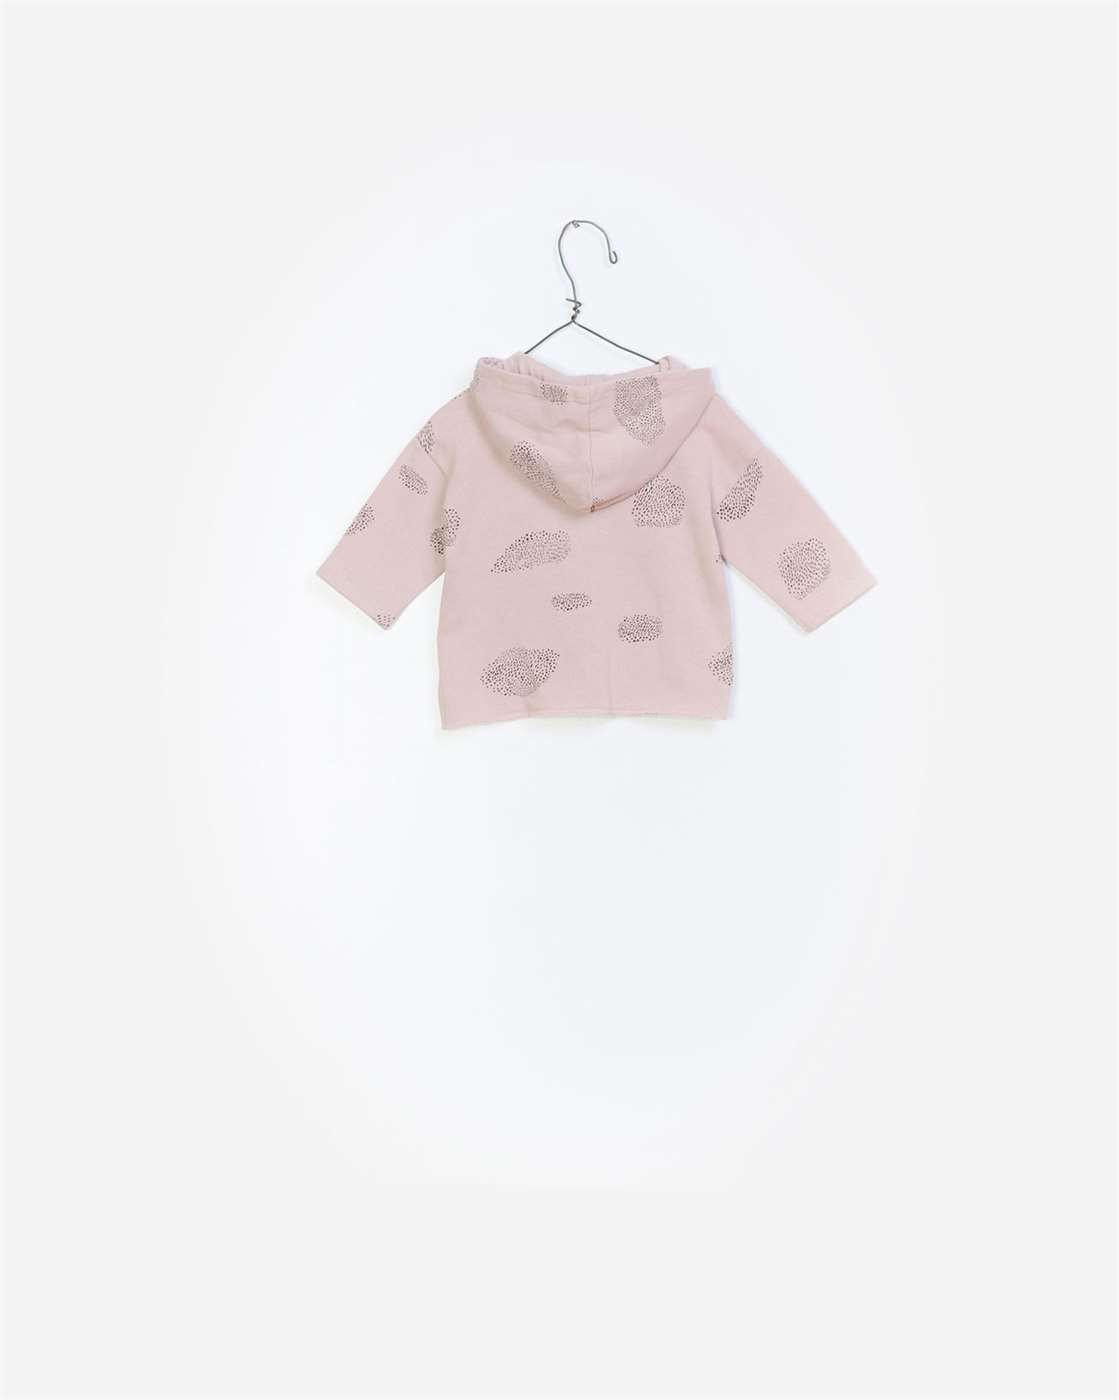 BeeBoo|BeeBoo PlayUp vêtement bébé baby cloth veste jacket felpa coton bio organic cotton rose pink 2